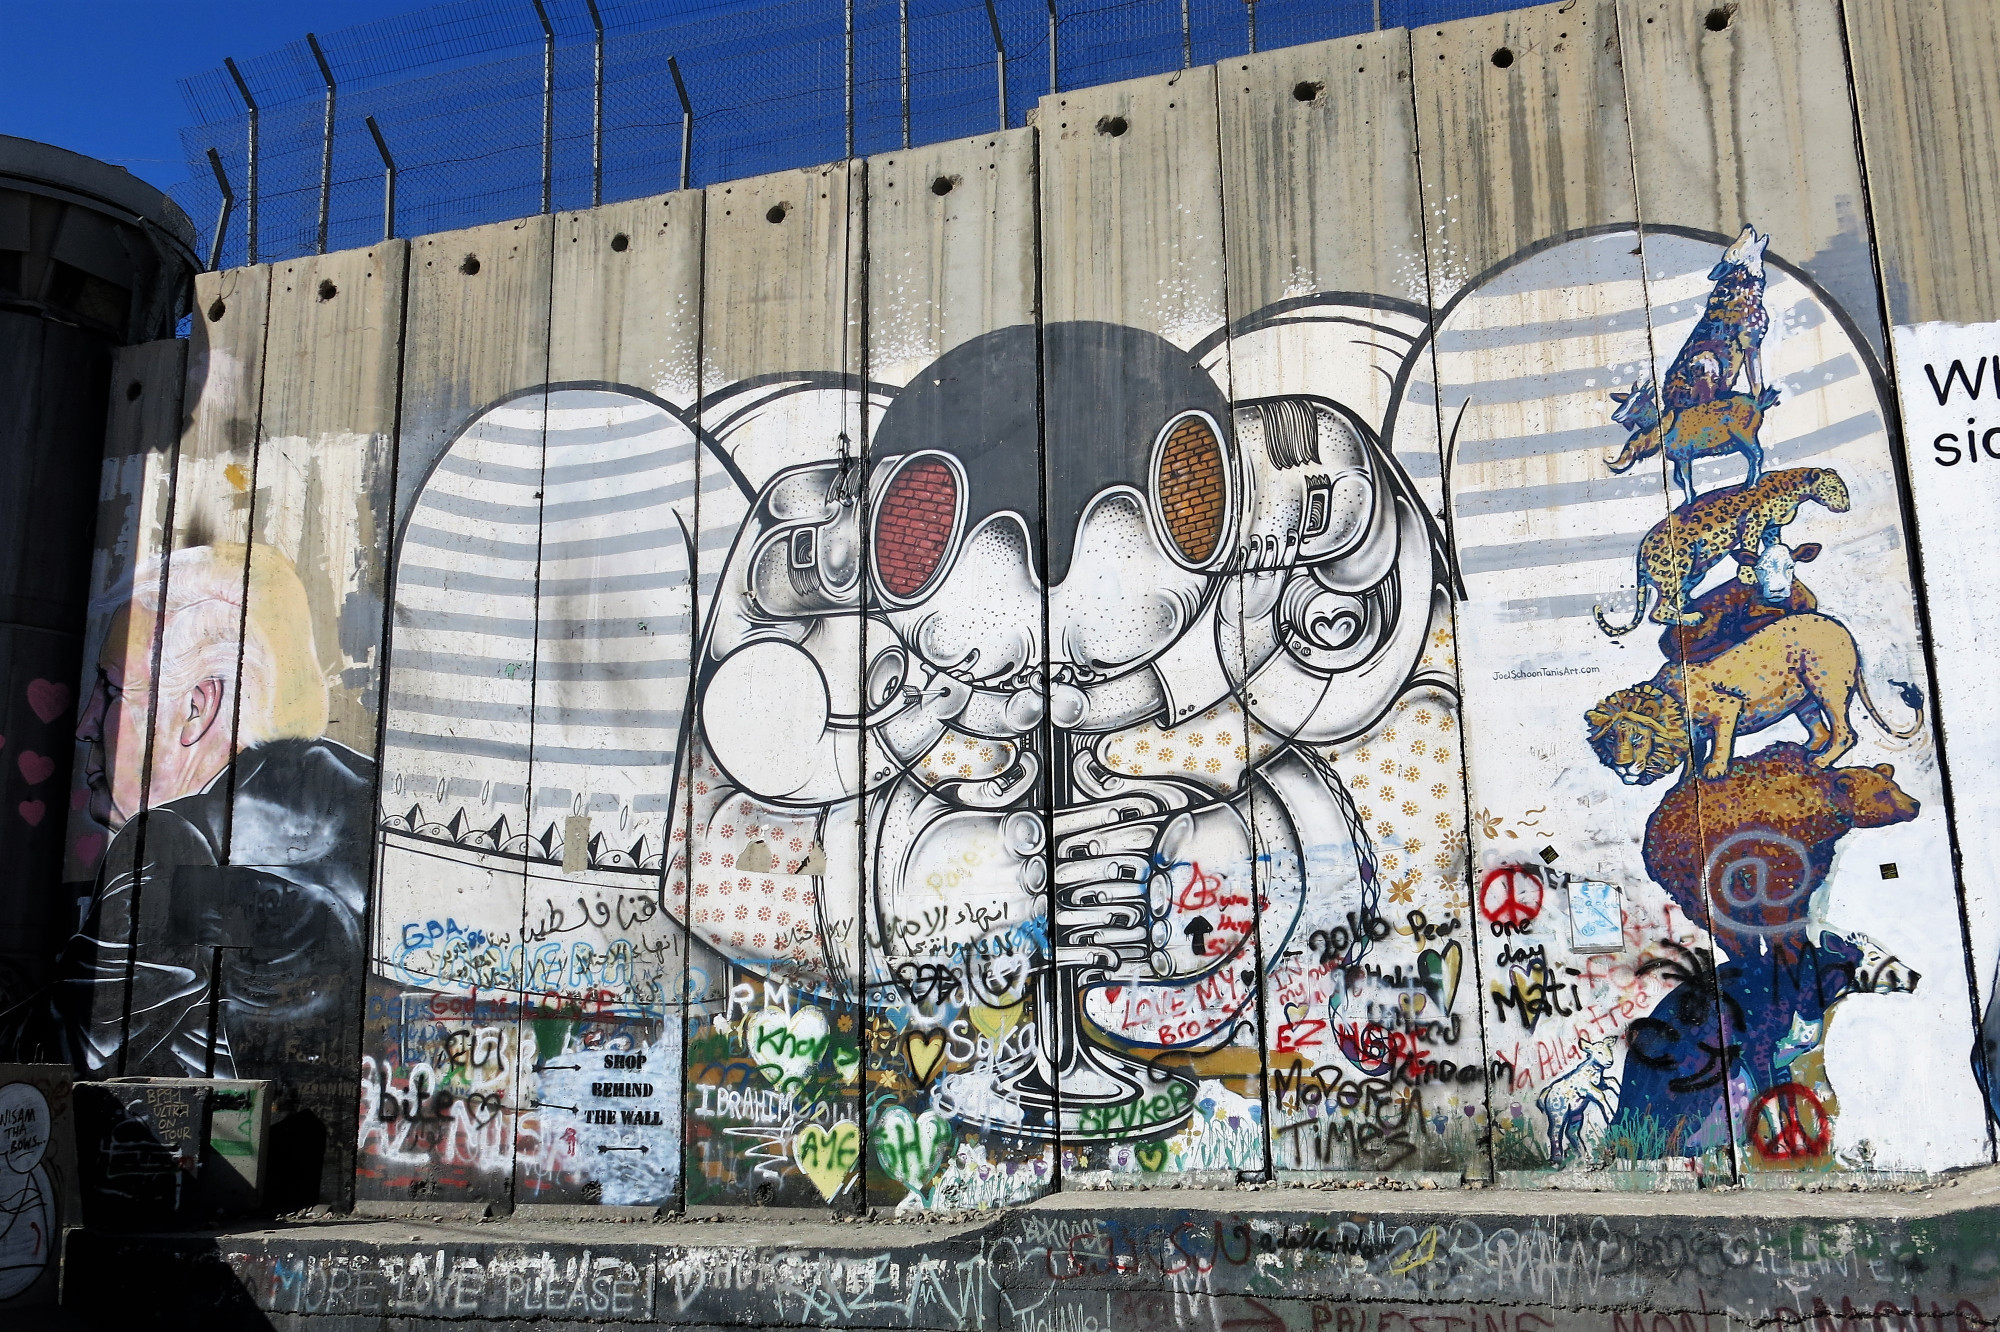 West Bank Seperation Wall Graffiti 